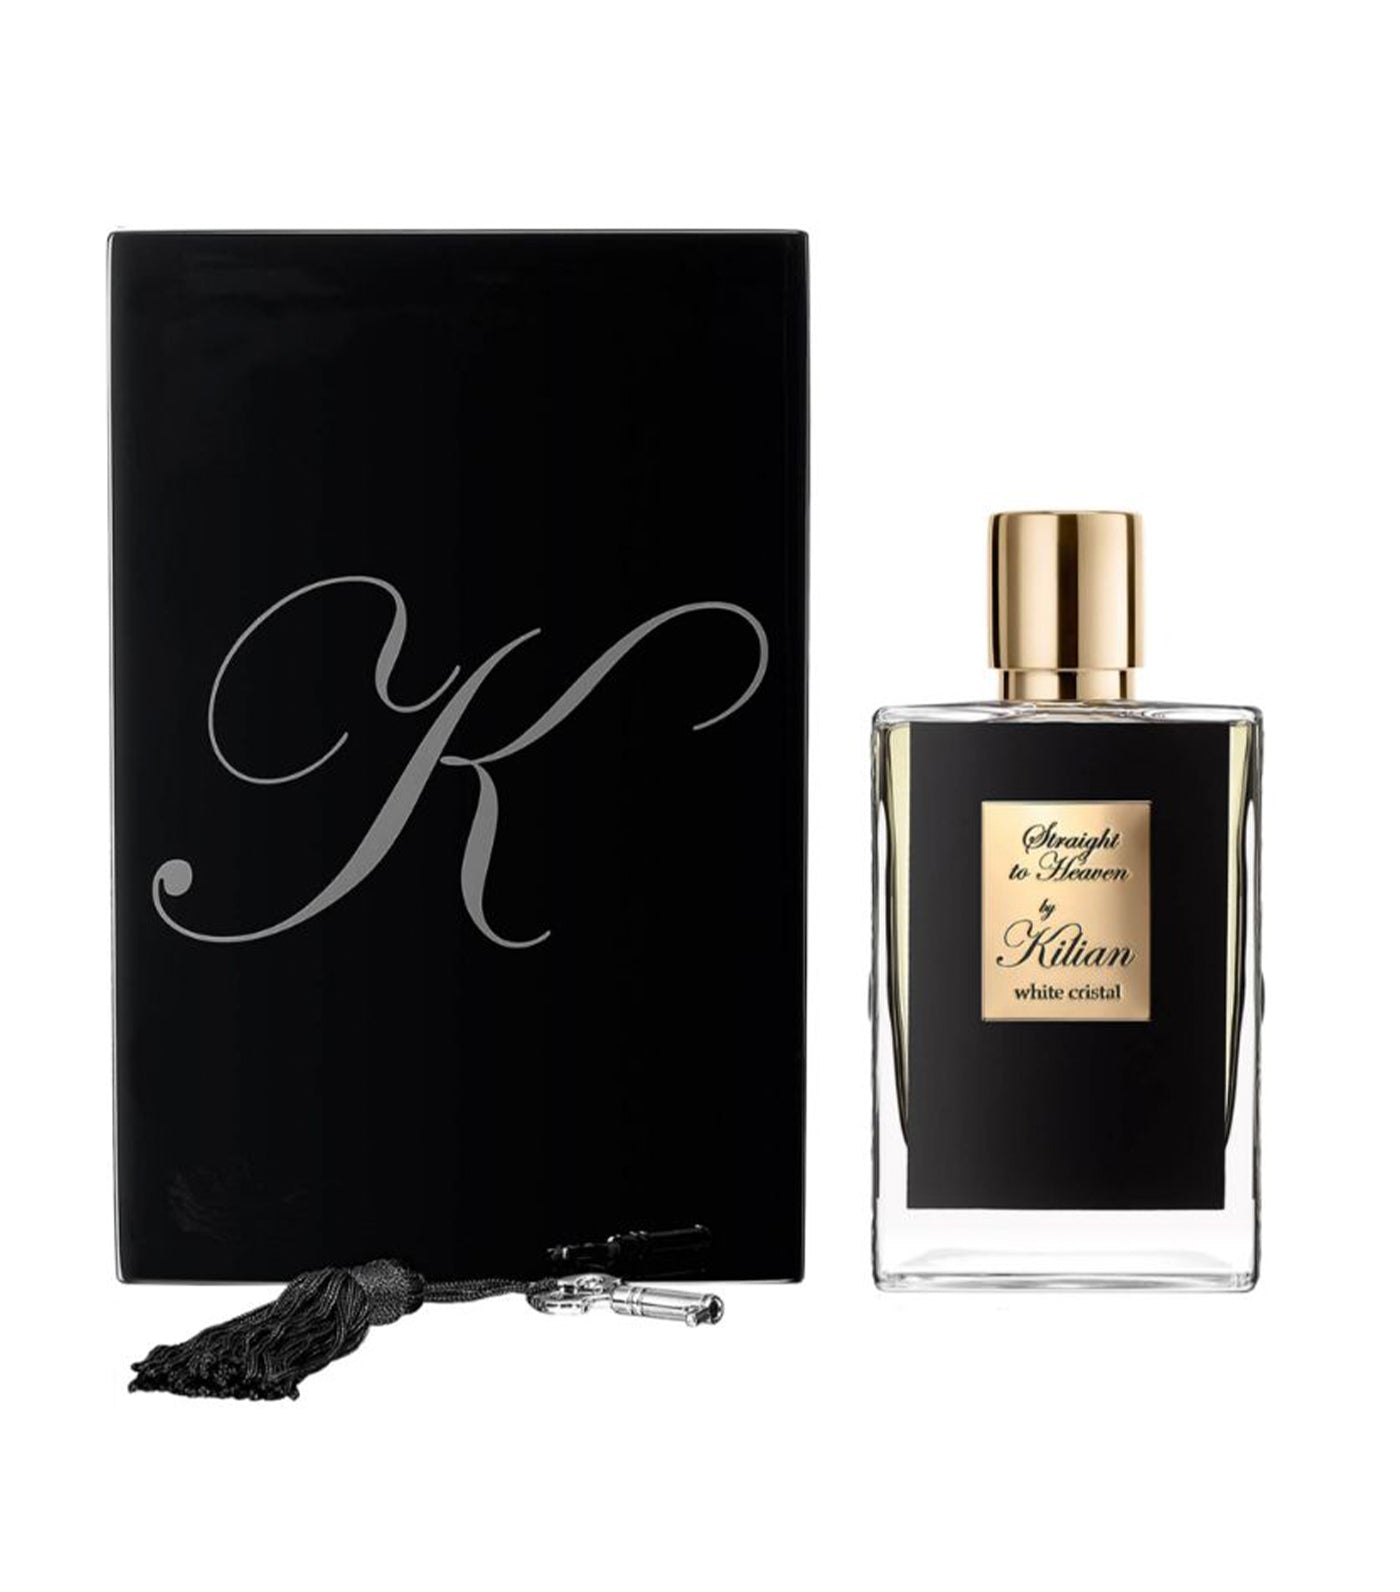 Kilian Paris Straight to Heaven, white cristal Eau de Parfum and Clutch